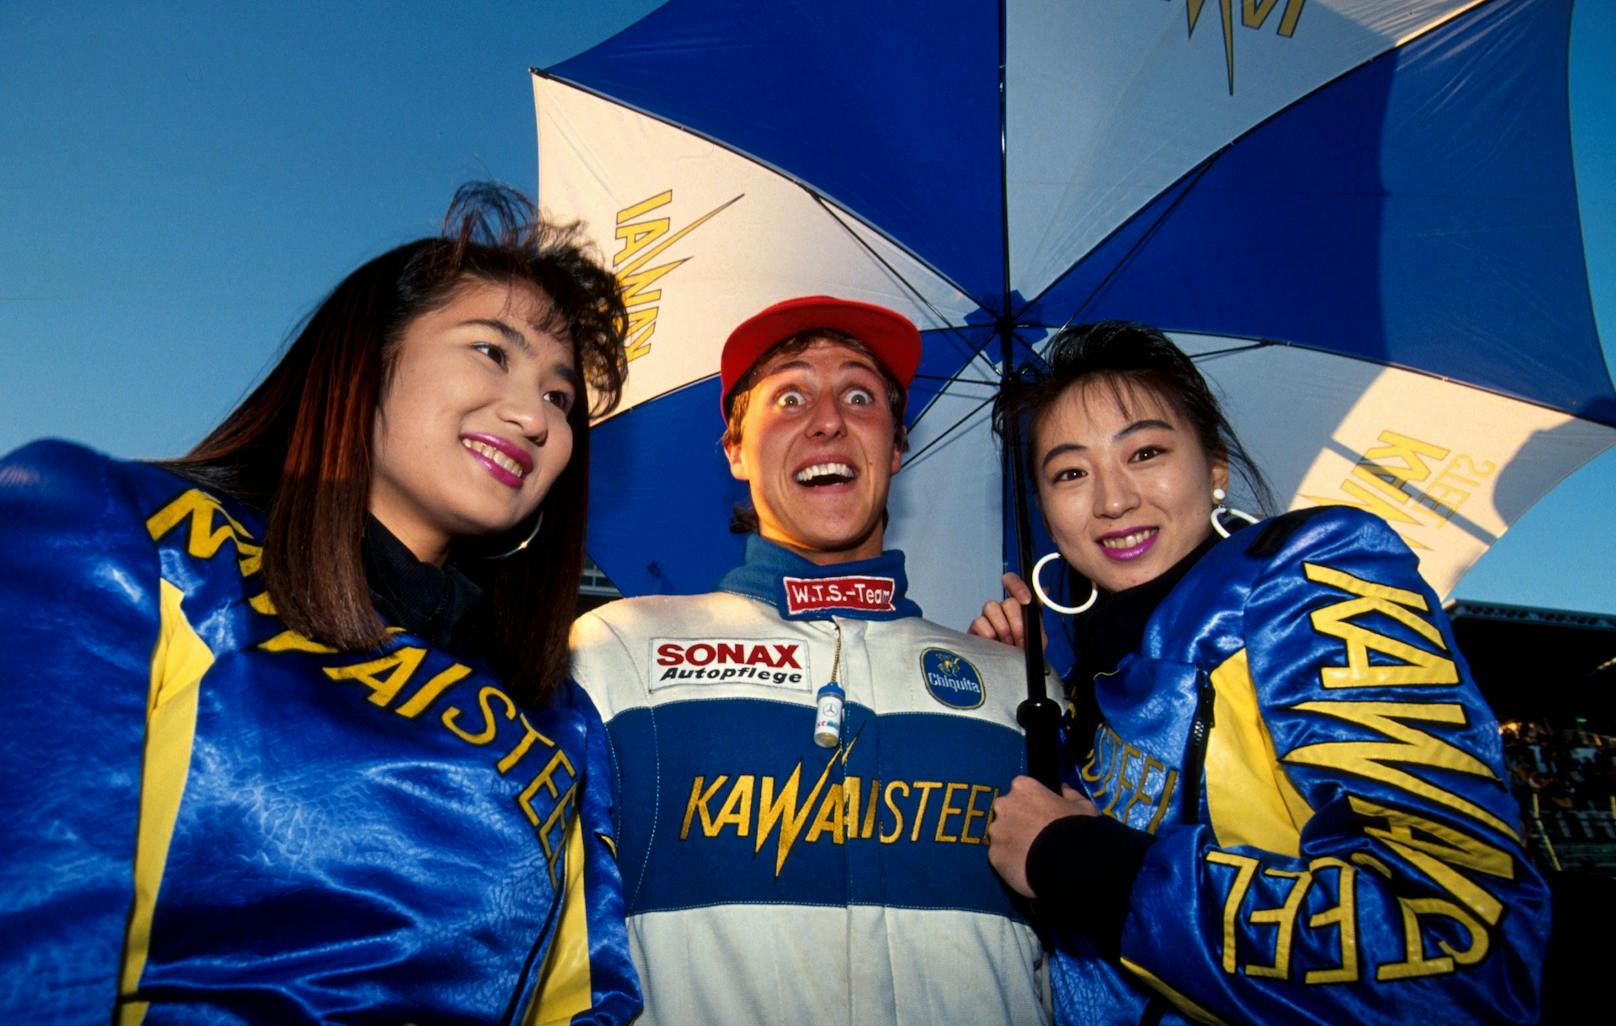 Formel-1-Legende Michael Schumacher schafft es gleich mehrfach in die Liste der größten Schummeleien. Der siebenfache Weltmeister reizte die Grenzen des Erlaubten gerne aus, ging auch das eine oder andere Mal darüber hinaus. 1994 überholte er in Silverstone Damon Hill in der Aufwärmrunde – verboten. Die Rennleitung disqualifizierte ihn. Schumacher ignoriert die "Schwarze Flagge" aber. Sein zweiter Platz wurde erst nachträglich aberkannt.